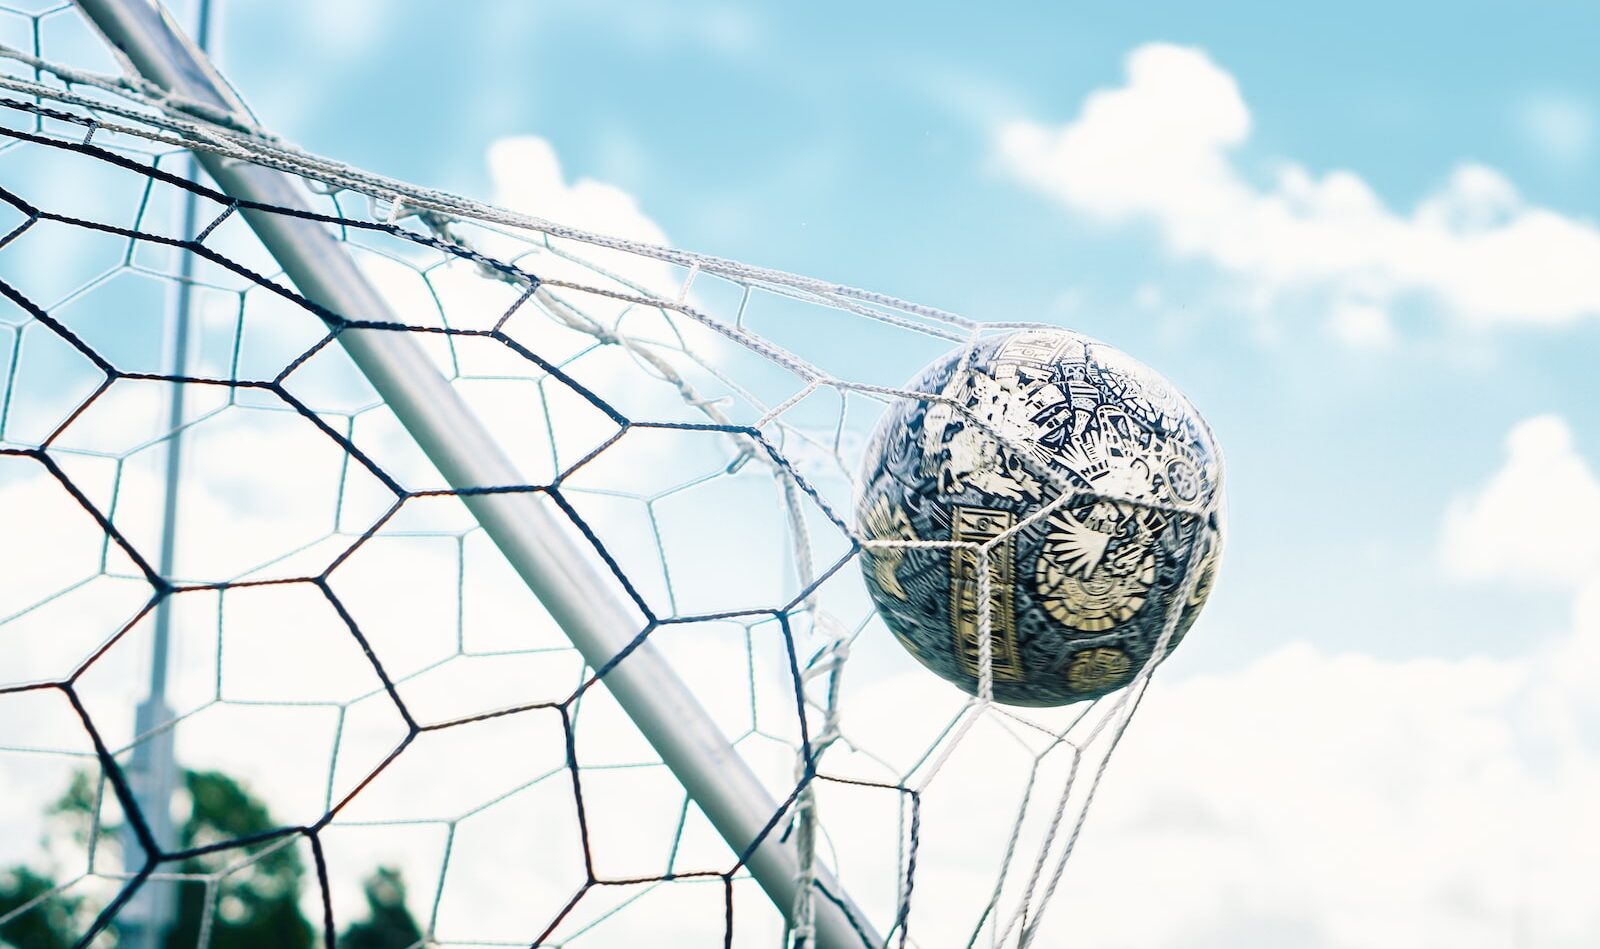 pallone di calcio che colpisce la rete